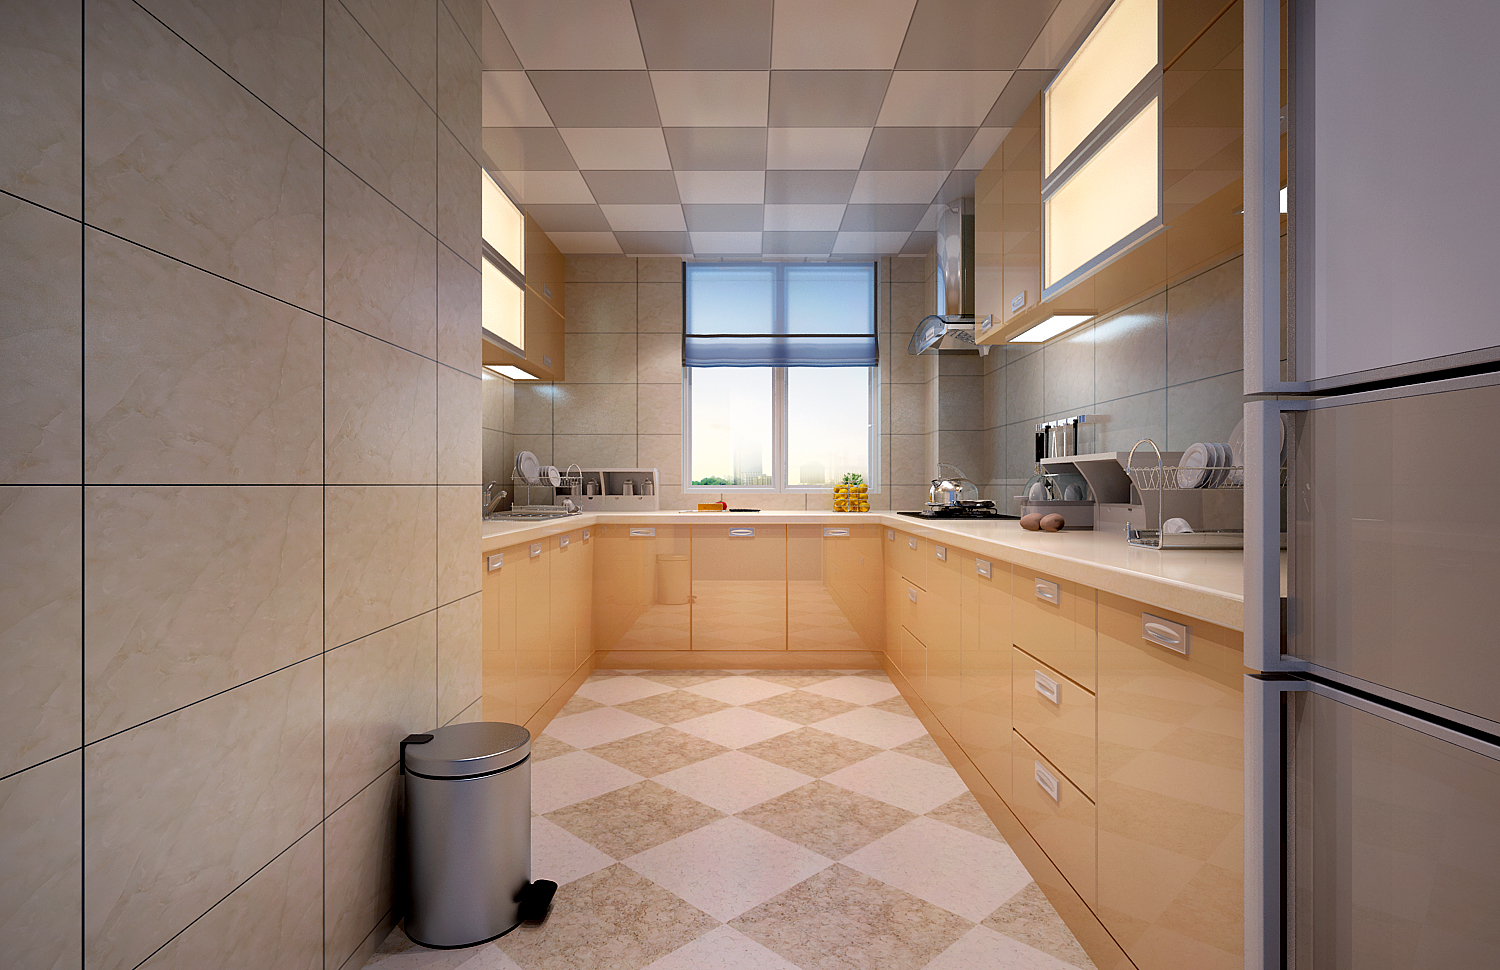 厨房顶面采用铝扣板吊顶装饰,地面300*300砖菱形铺贴